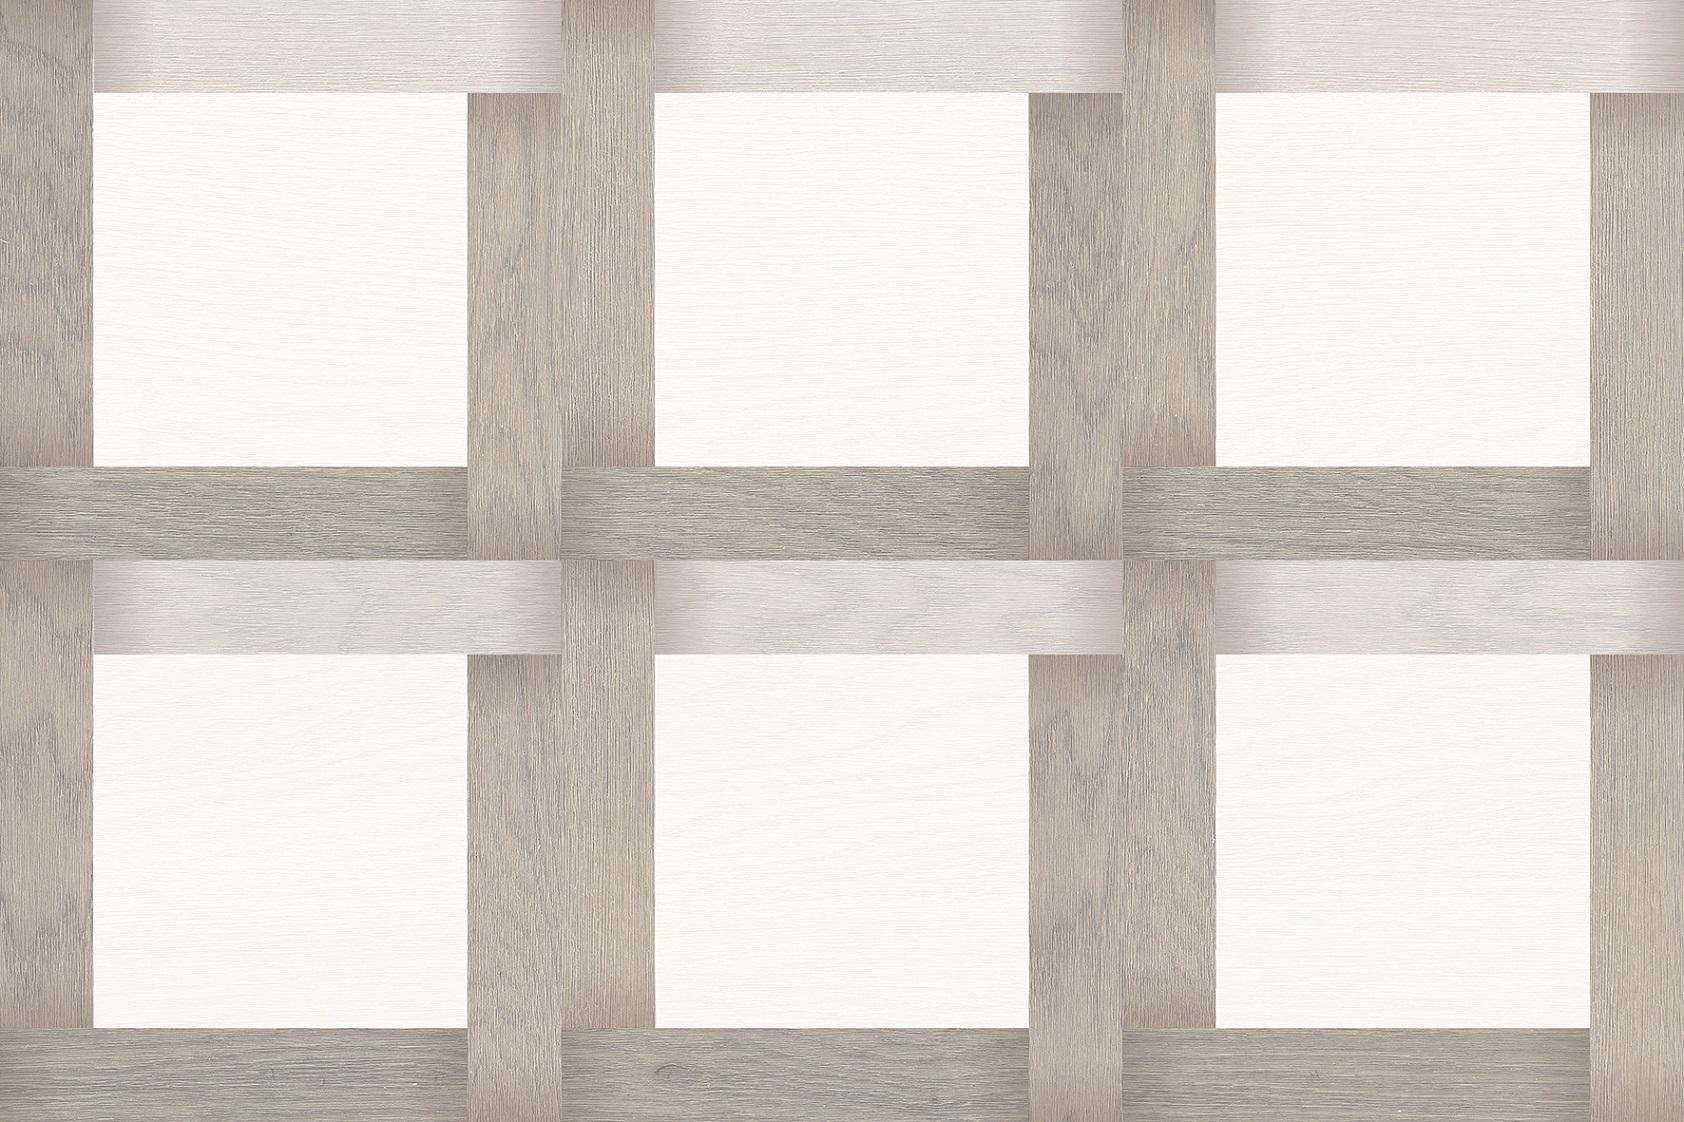 Light Tiles for Bathroom Tiles, Kitchen Tiles, Accent Tiles